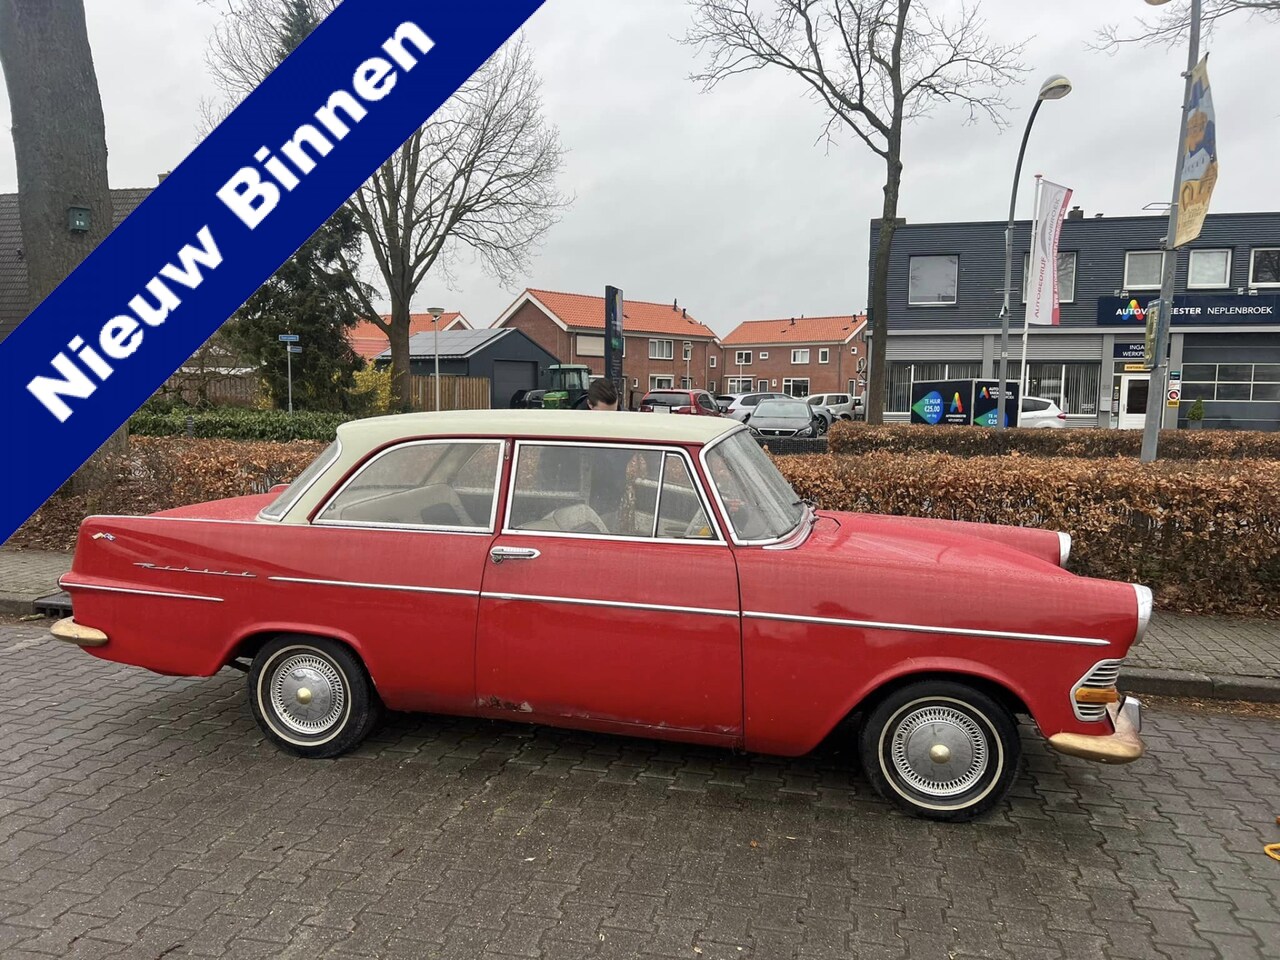 Opel Rekord - P2 17R2 uit 1962 APK VRIJ Km 53.000 Uniek !! nu 4950,- - AutoWereld.nl